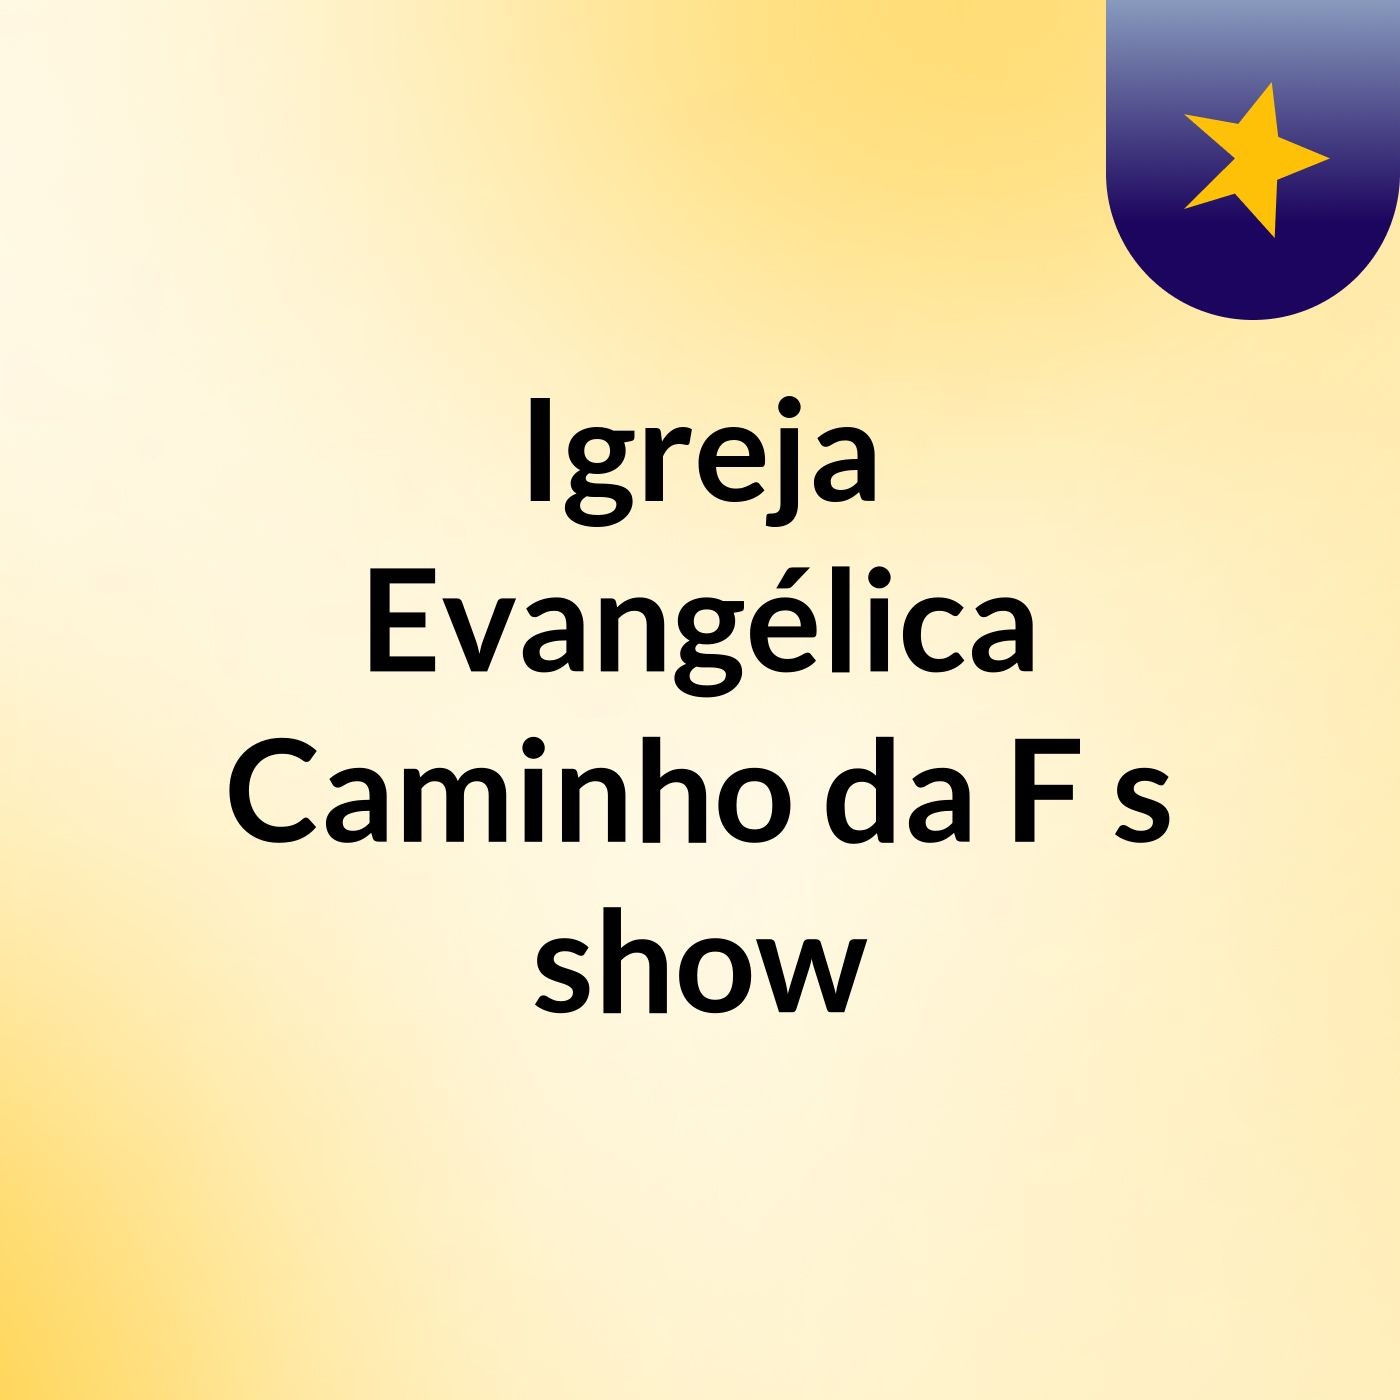 Igreja Evangélica Caminho da F's show